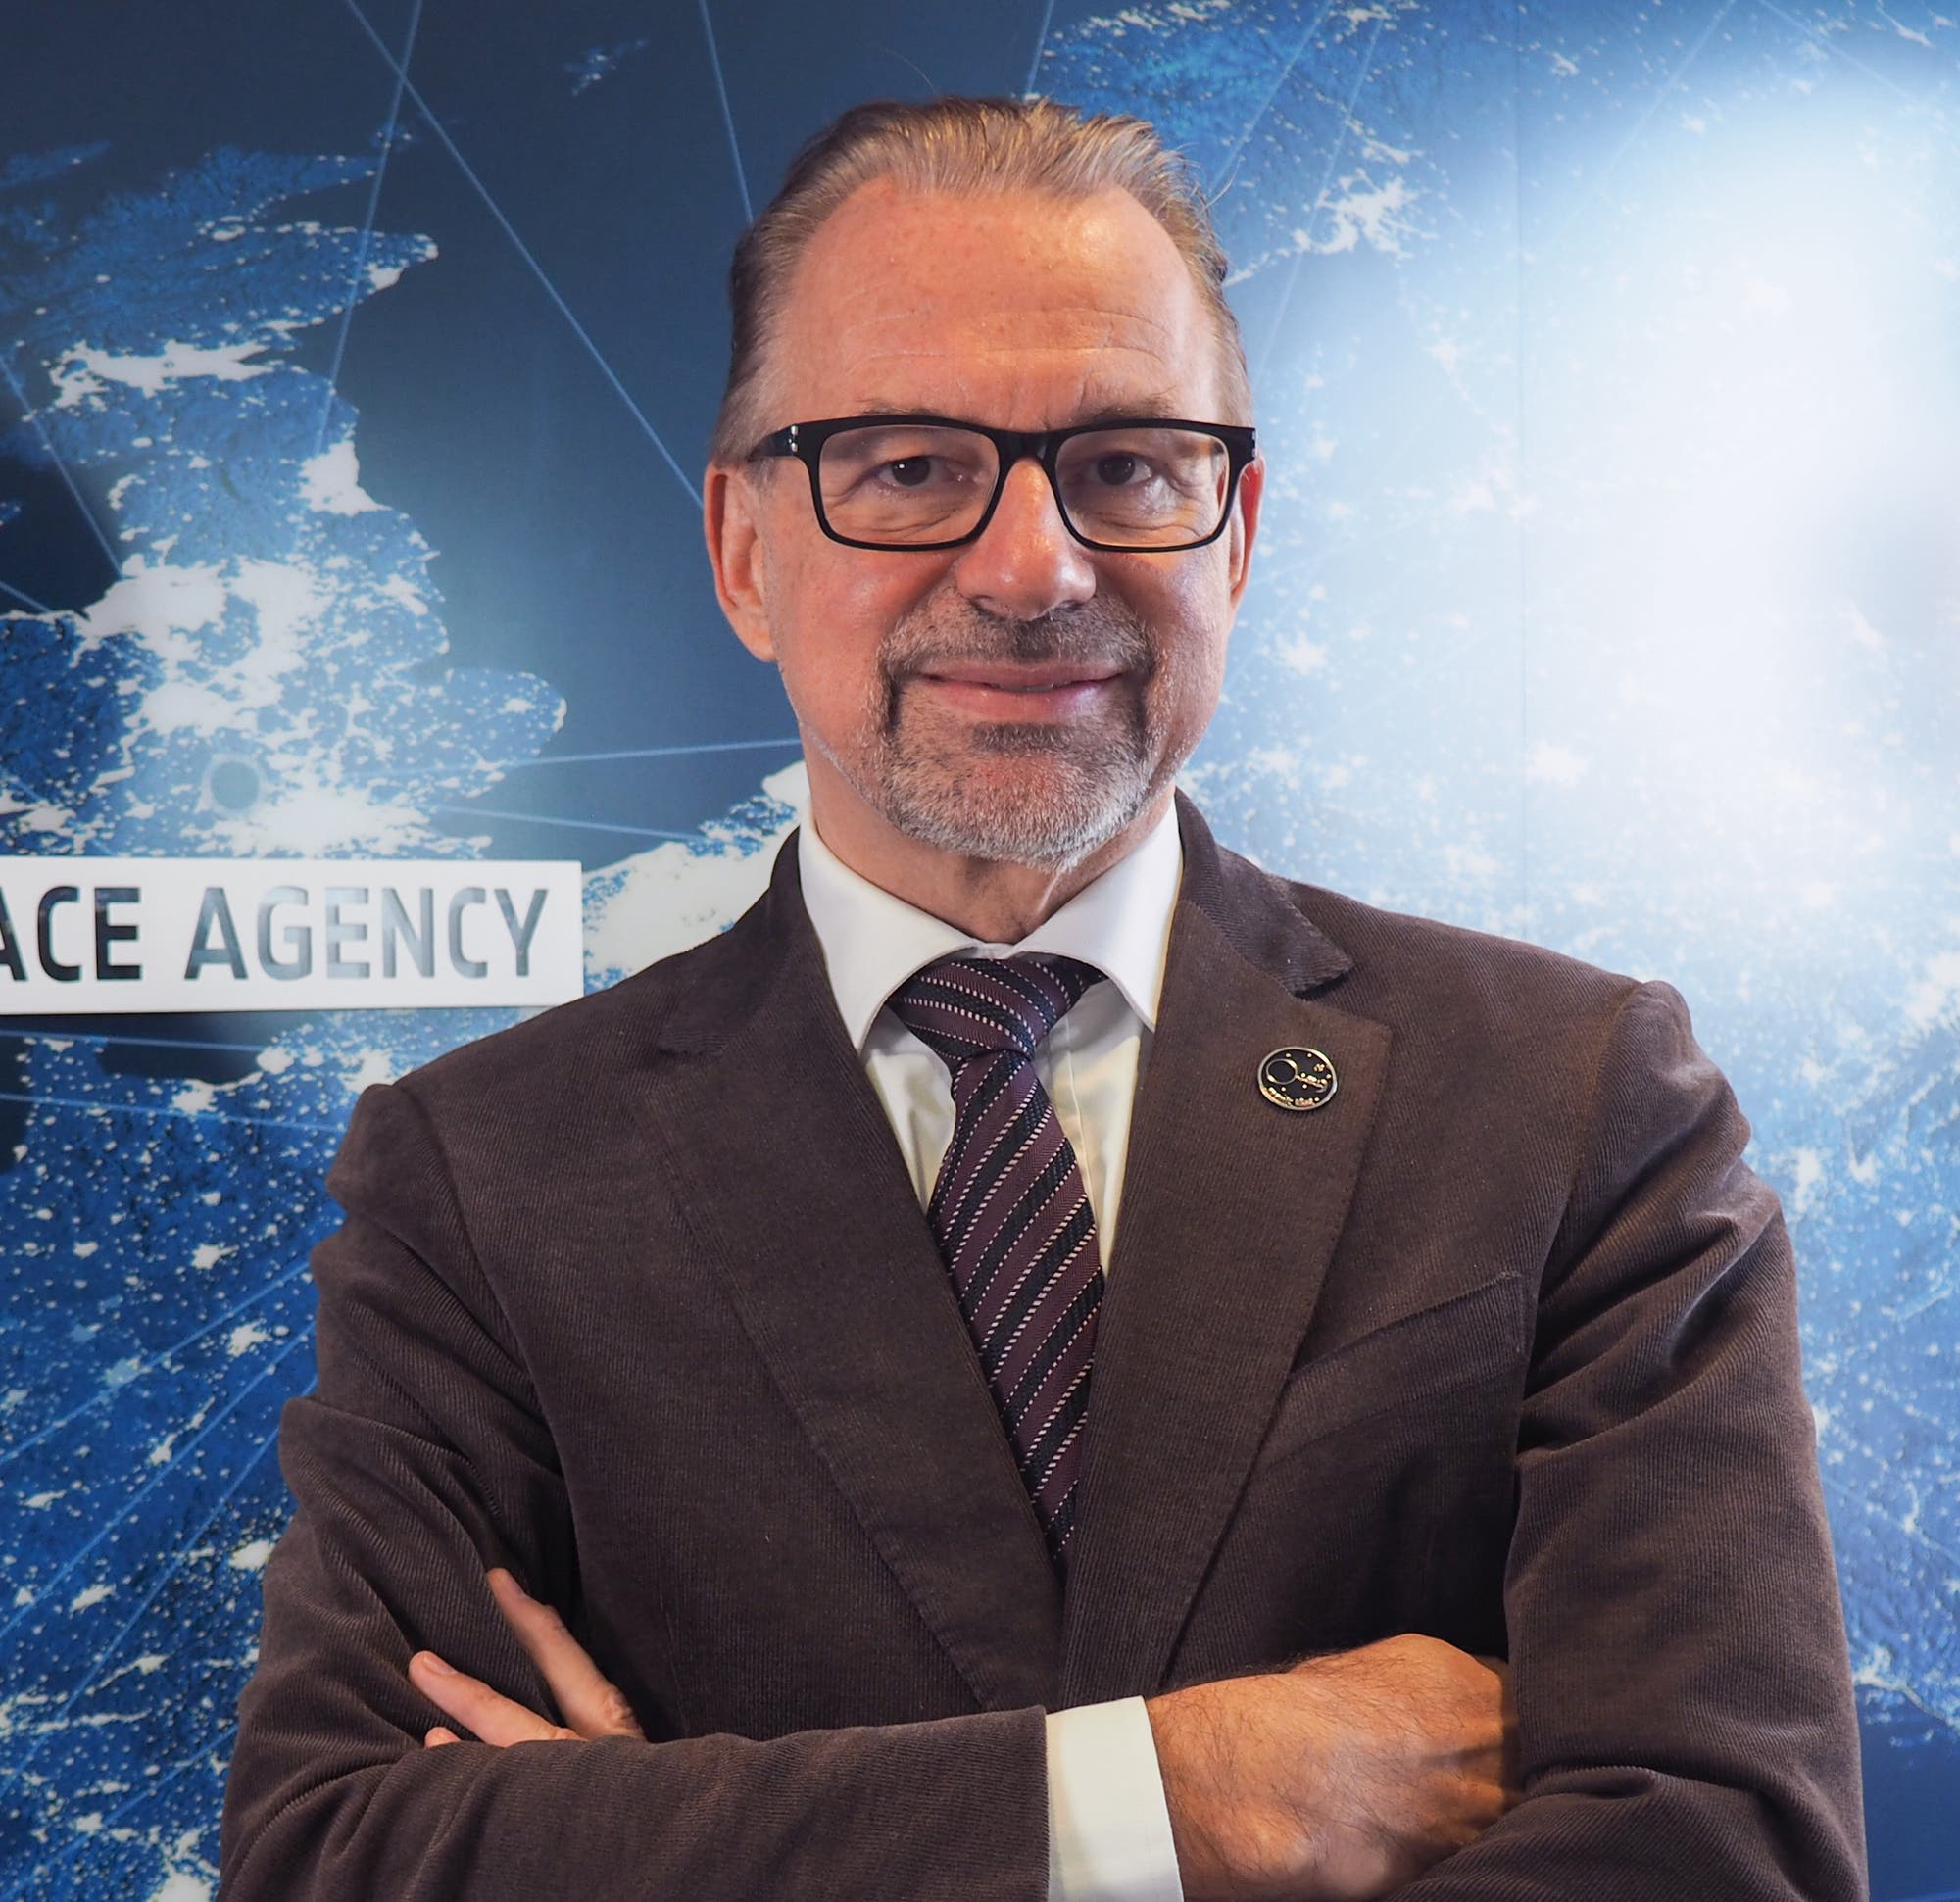 Der gebürtige Österreicher ist seit März 2021 Generaldirektor der Europäischen Weltraumorganisation (ESA), deren Sitz sich in Paris befindet.